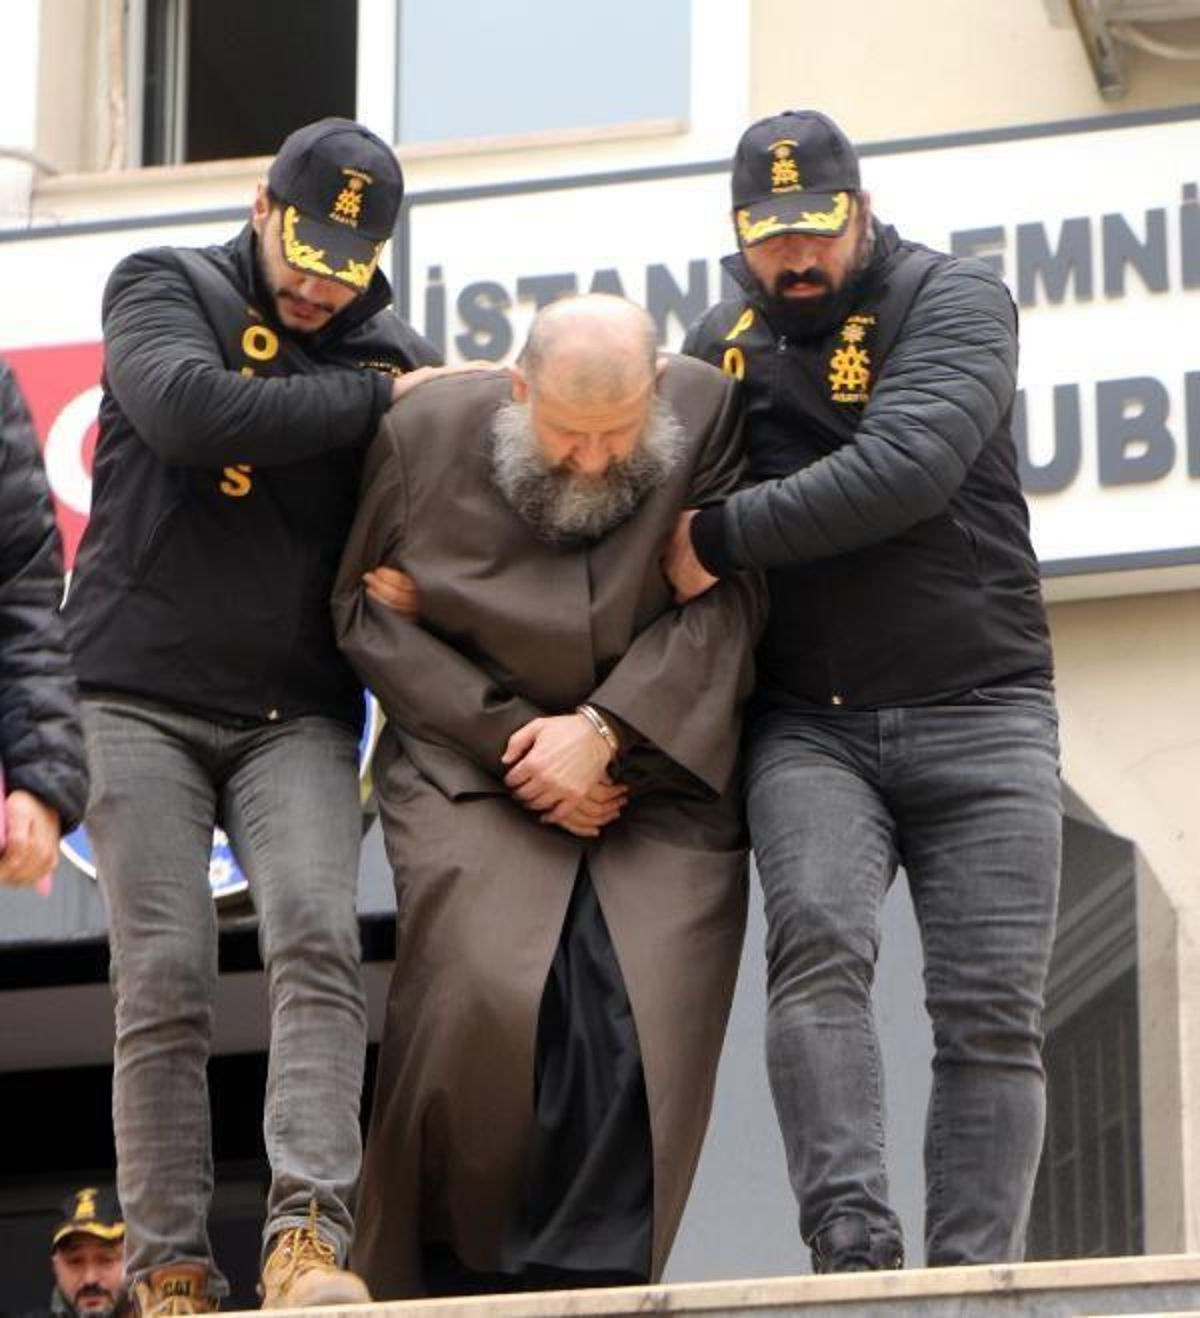 6 yaşında evlendirilen kız davası! Hiranur Vakfı kurucusu Yusuf Ziya Gümüşel'e 22 yıl hapis cezası...